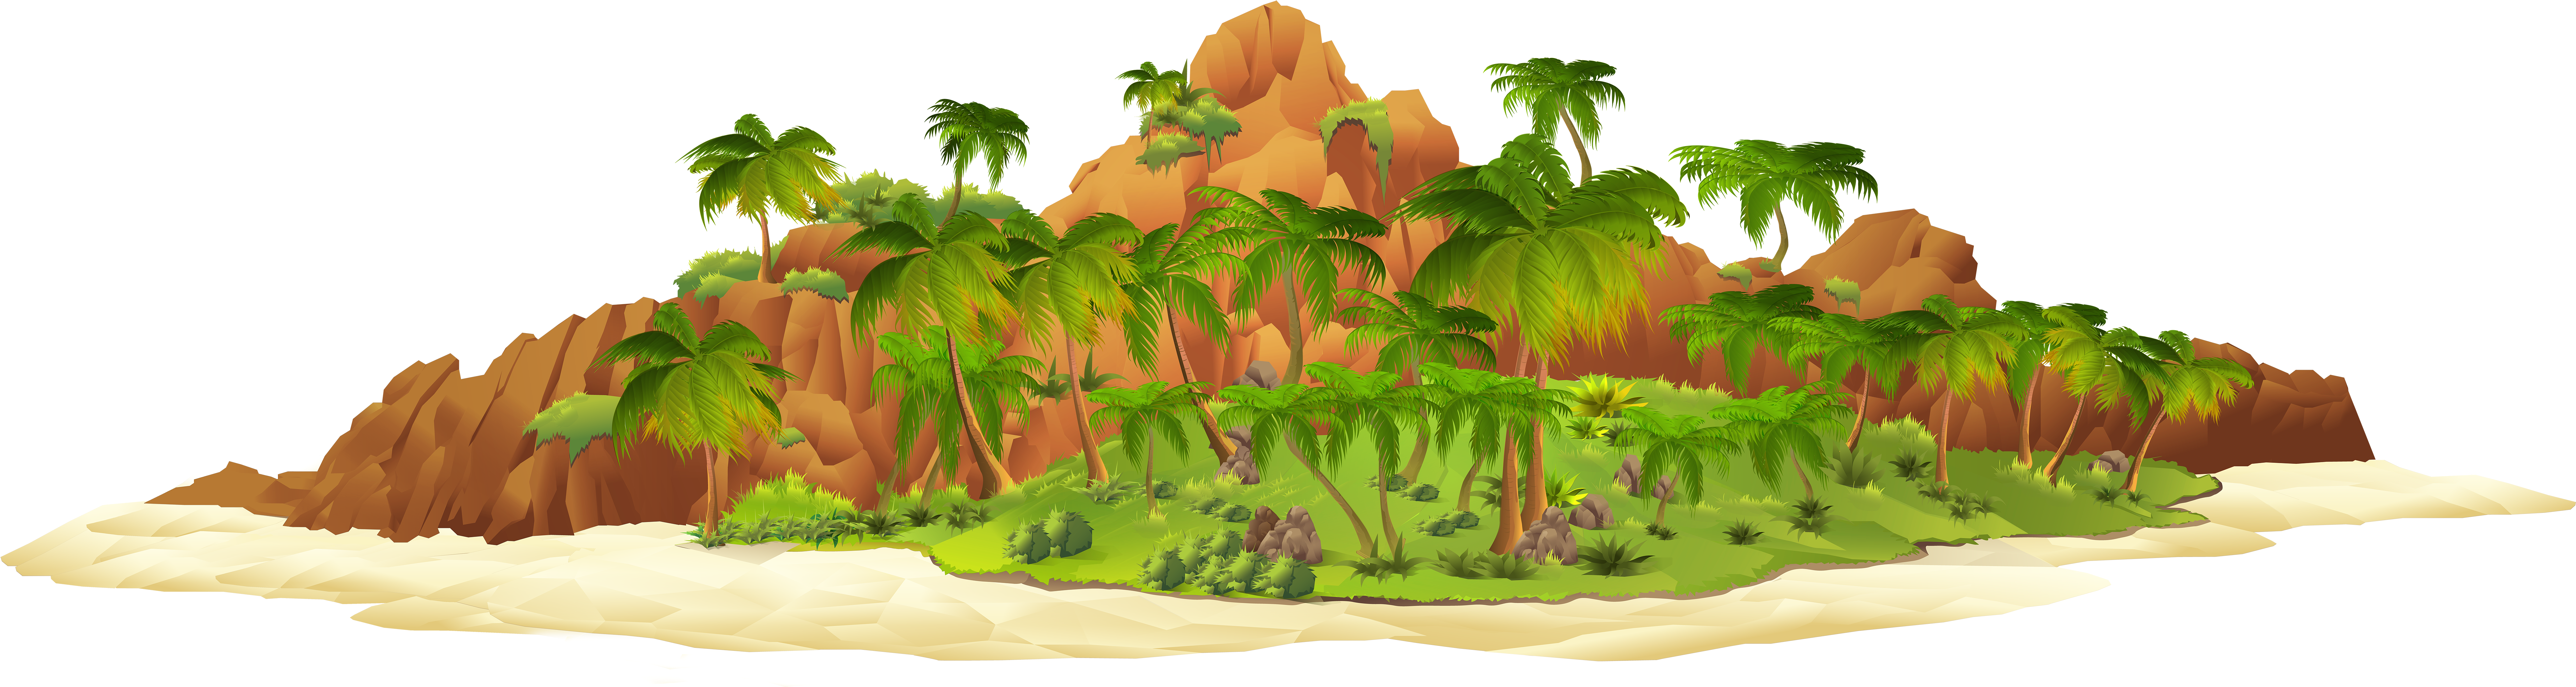 A Cartoon Island With Palm Trees